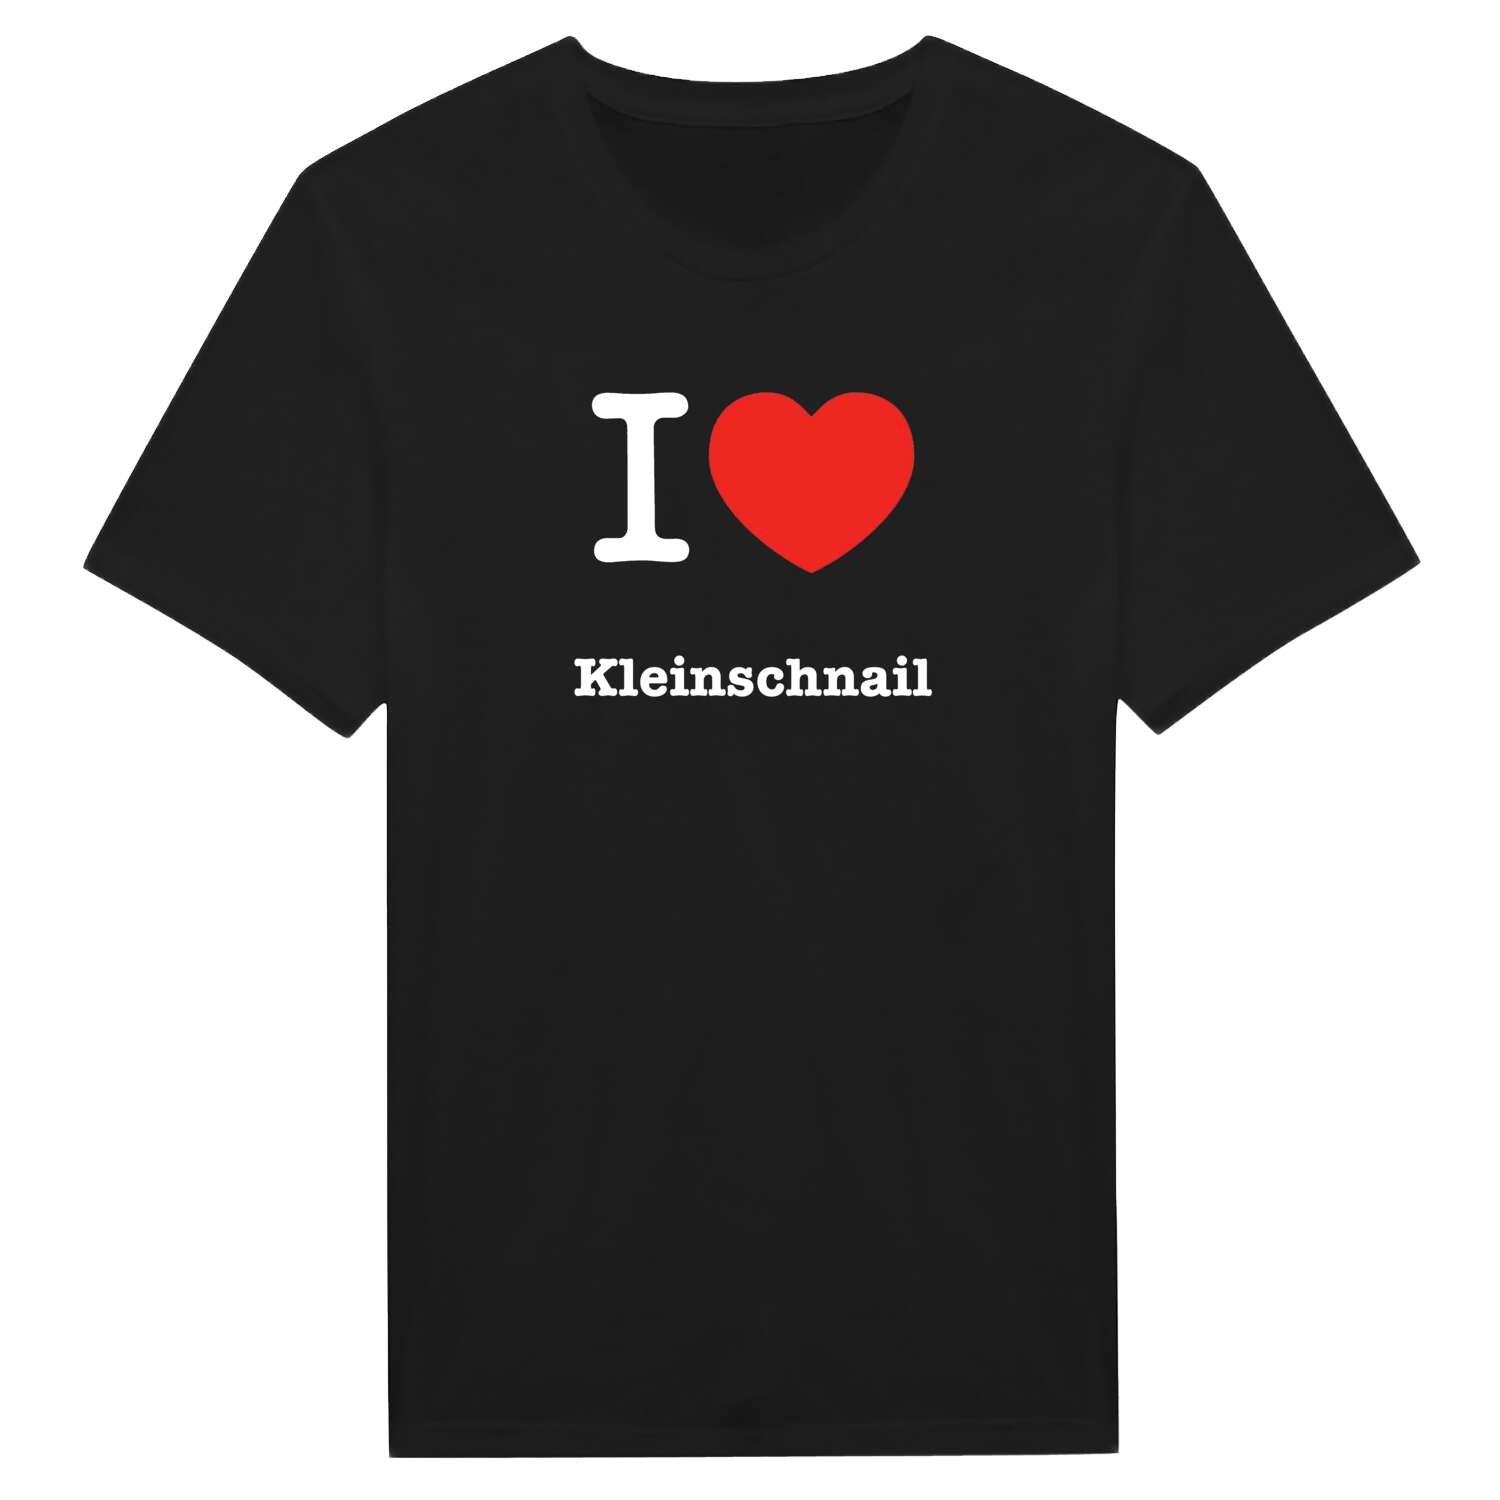 Kleinschnail T-Shirt »I love«